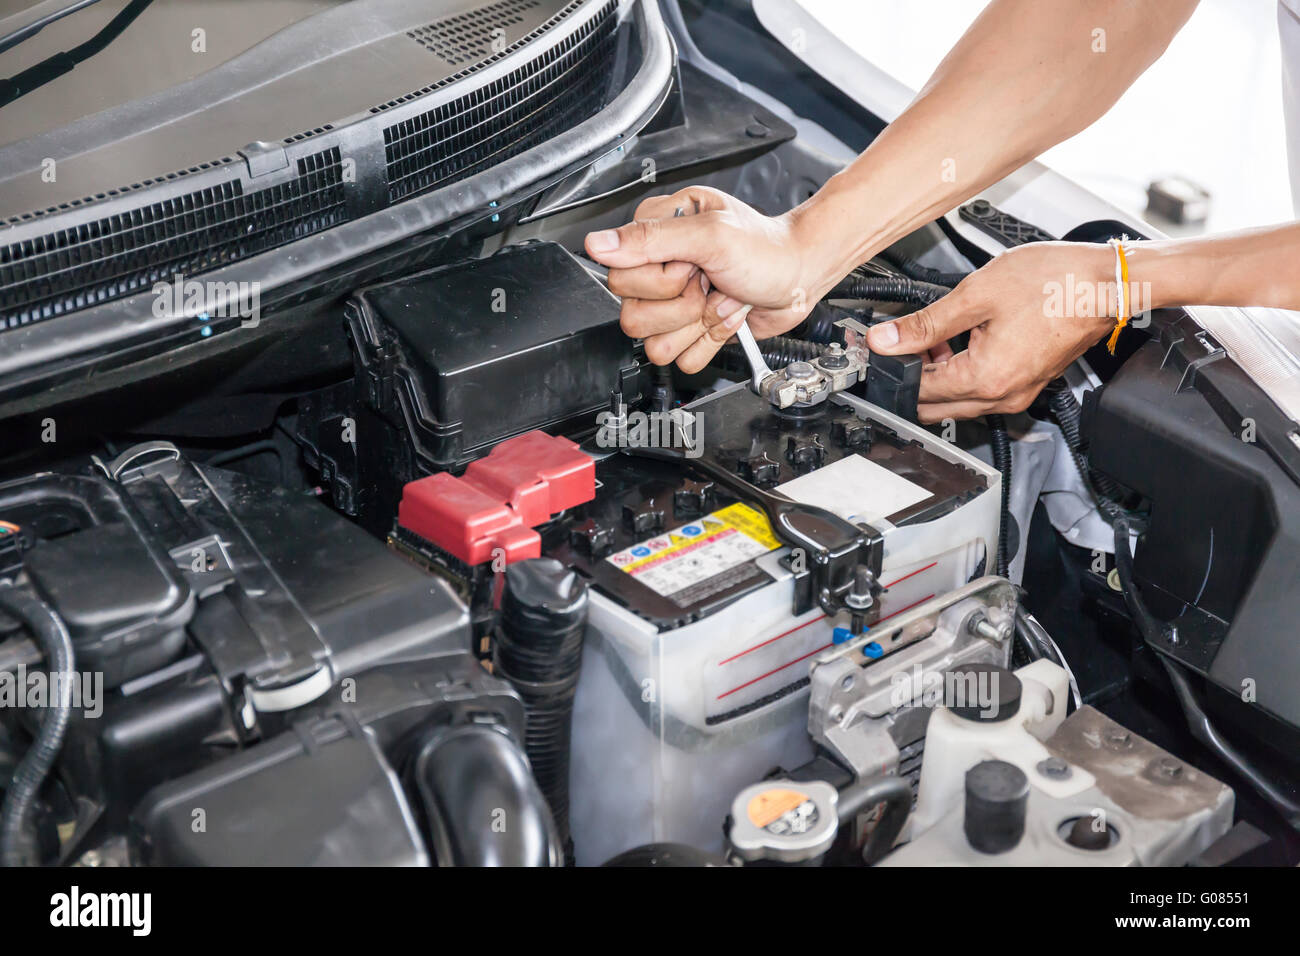 Mechaniker Ingenieur Befestigung Autobatterie in Garage (Tiefenschärfe  Stockfotografie - Alamy